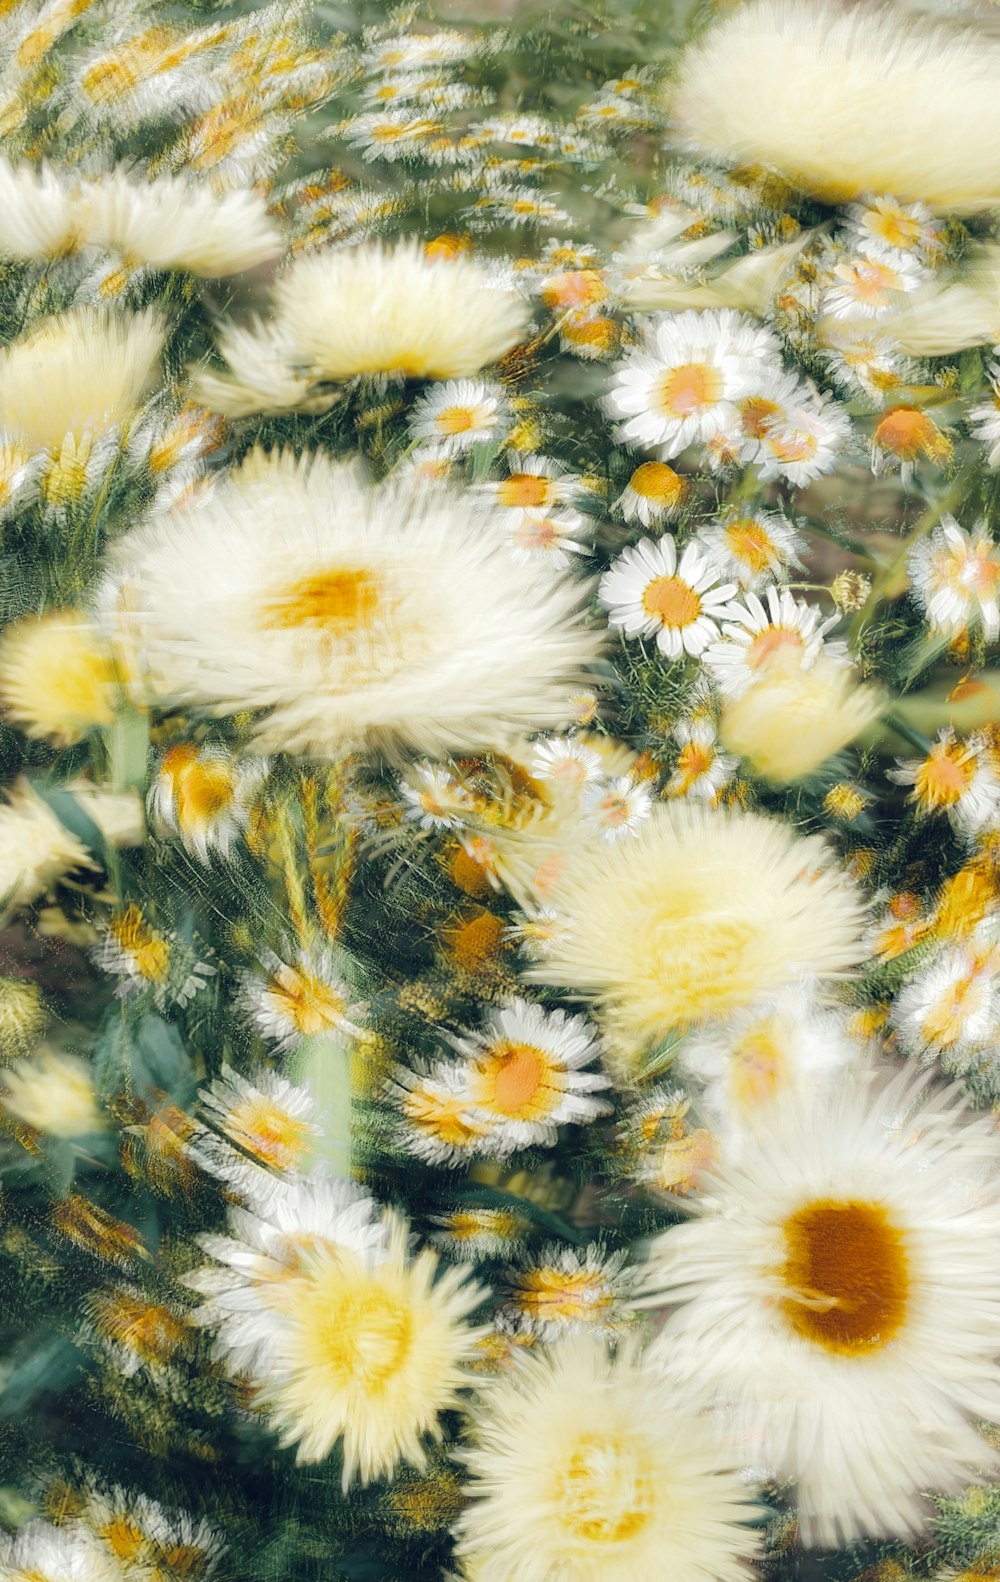 un bouquet de fleurs blanches et jaunes dans un champ